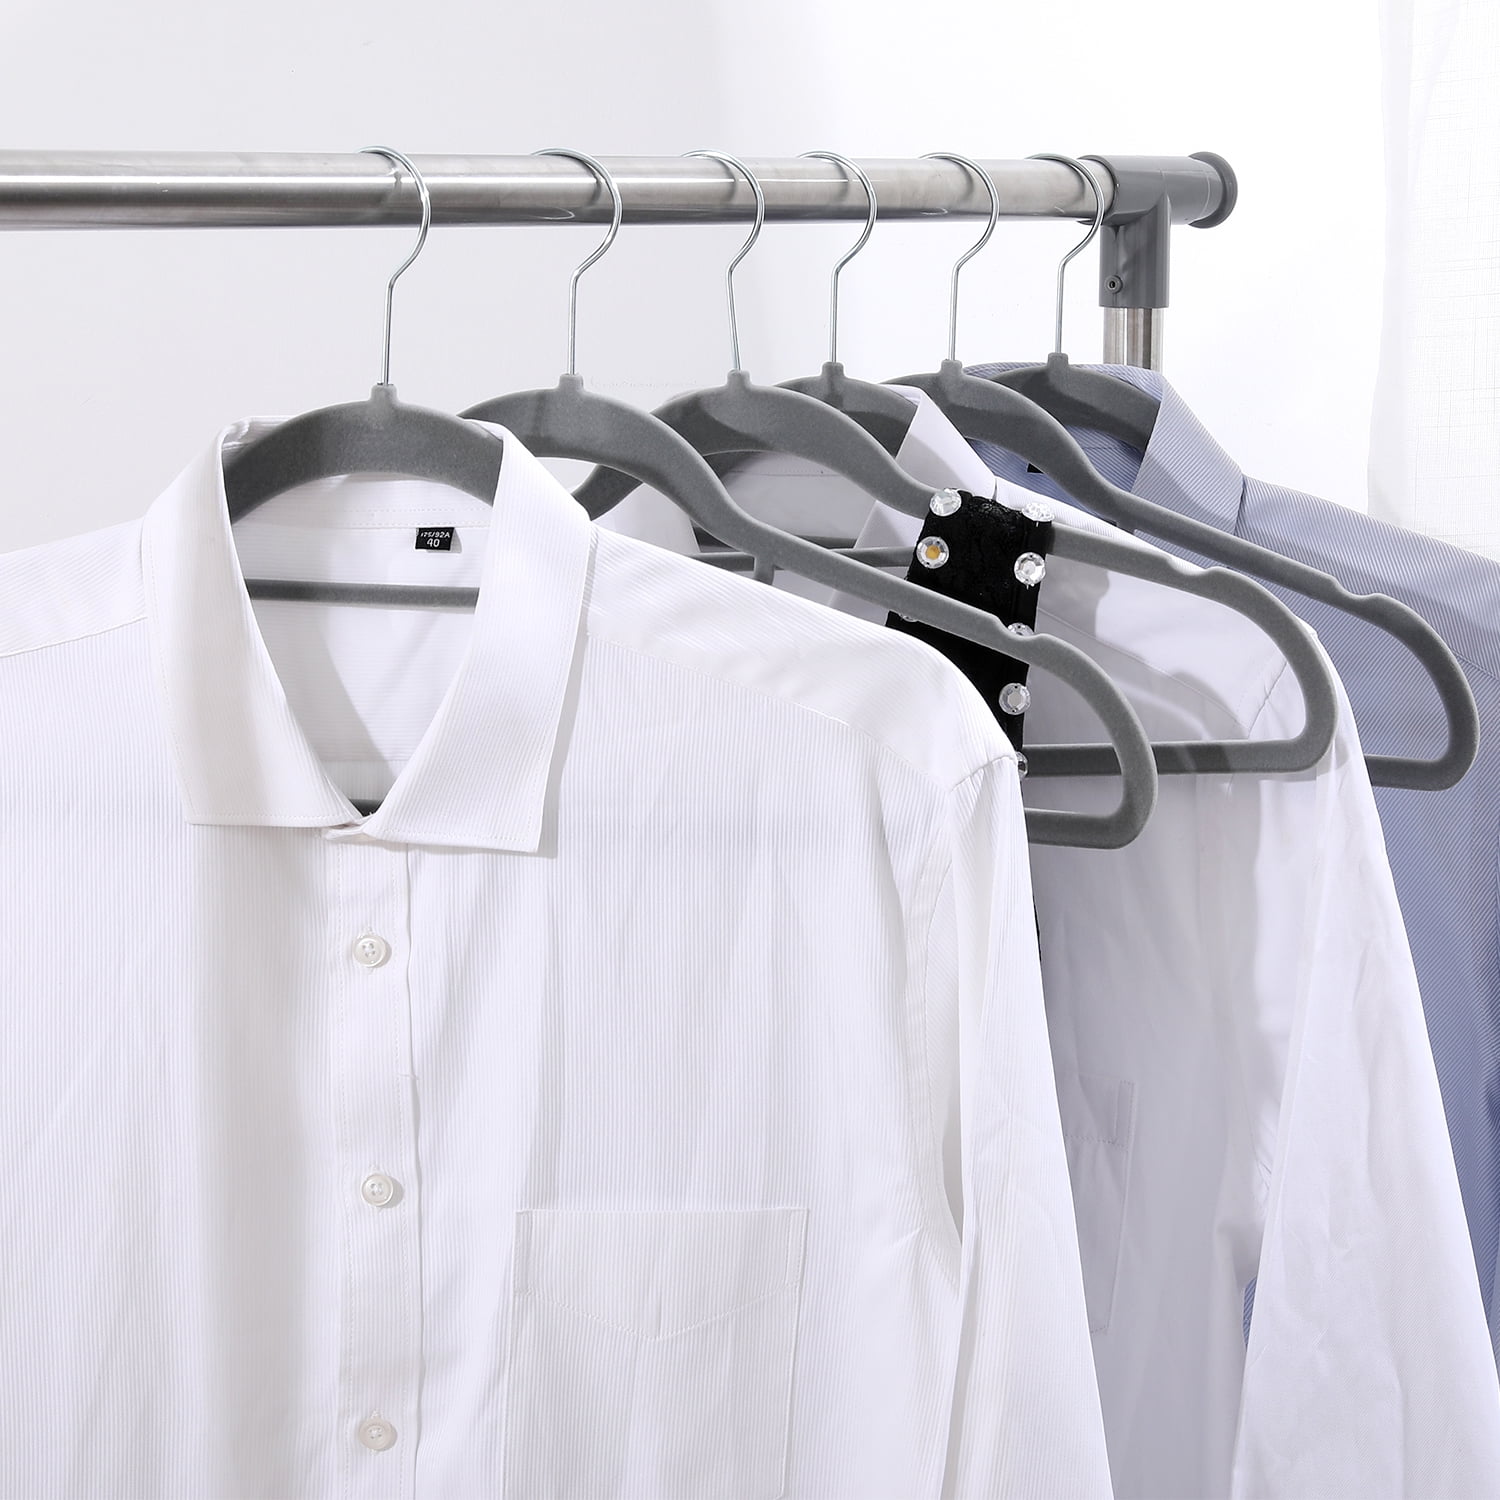 Ollieroo 50 Pack Velvet Hangers,Gray Clothing Hangers,Non-Slip and